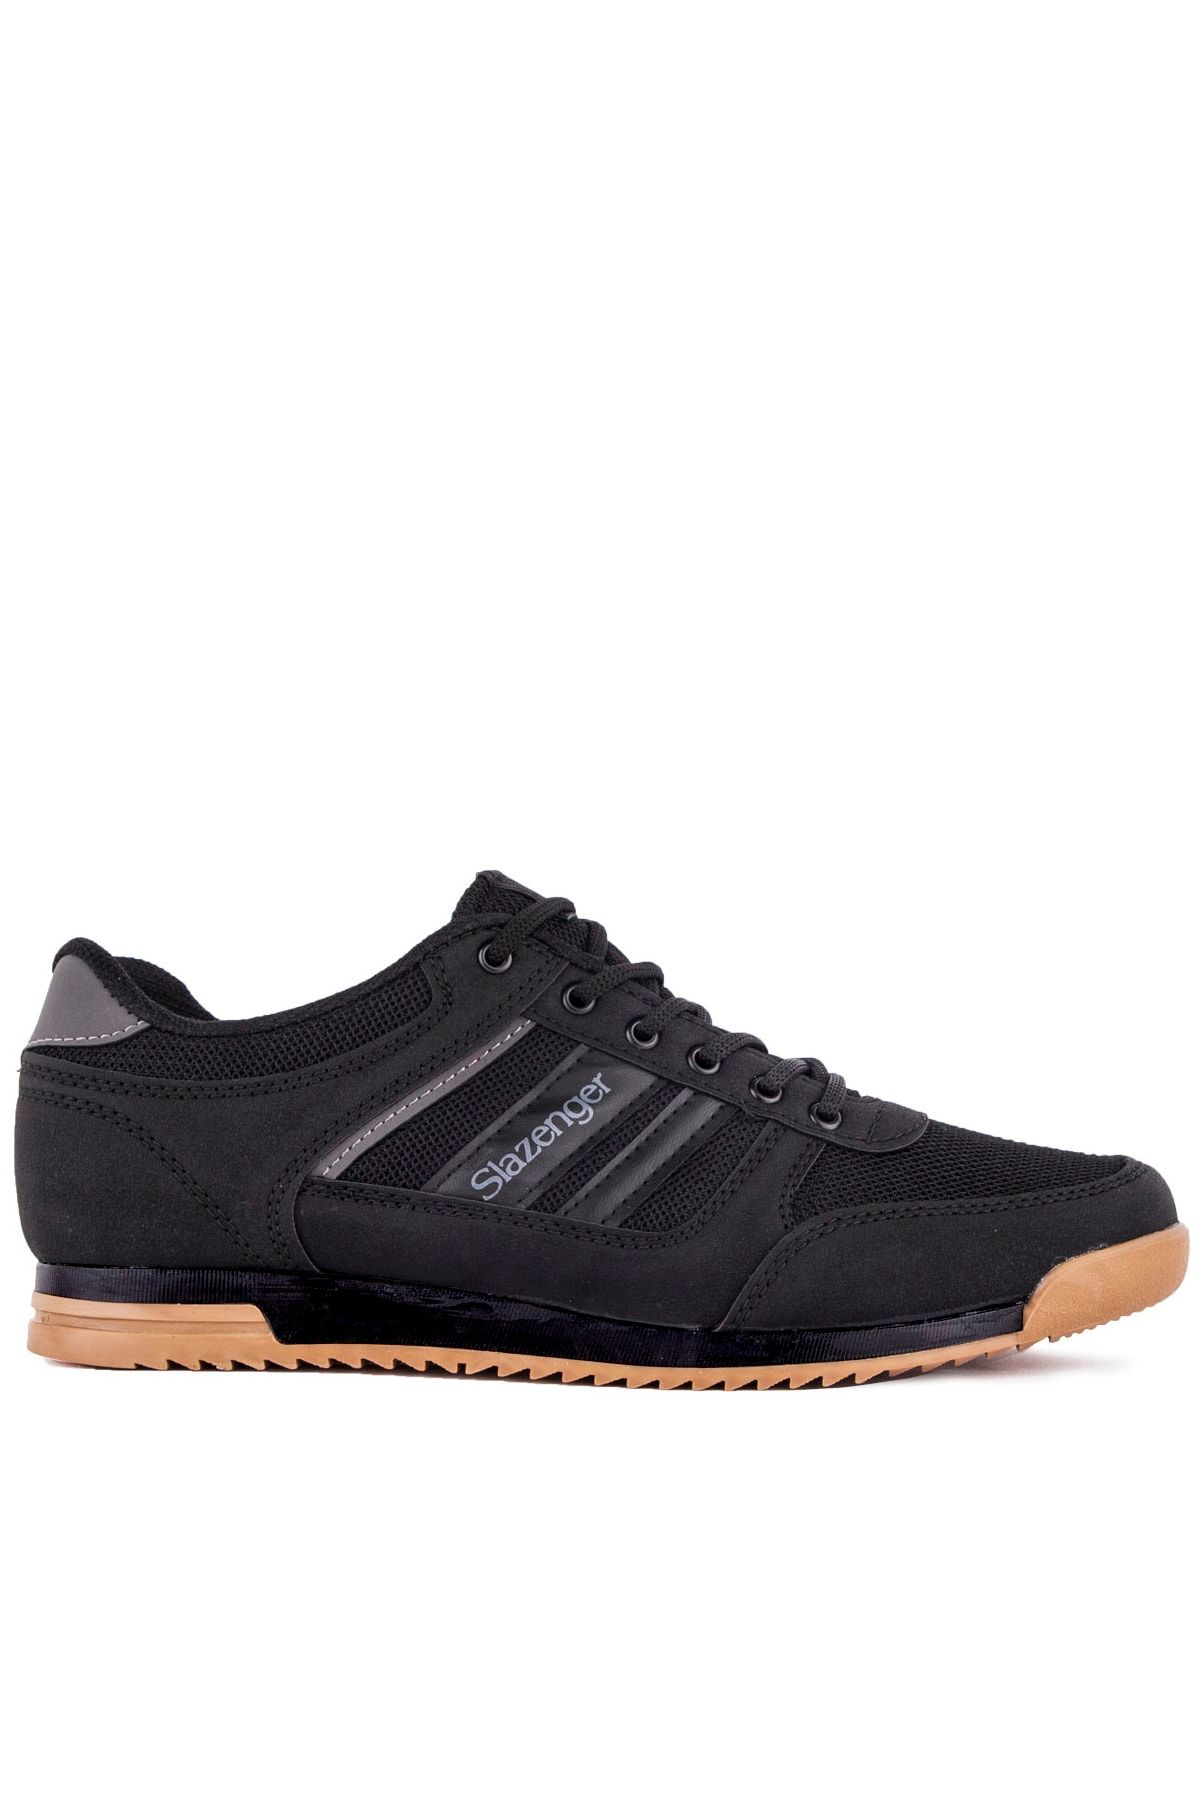 Slazenger ACTIVE Sneaker Erkek Ayakkabı Siyah / Siyah SA10LE021